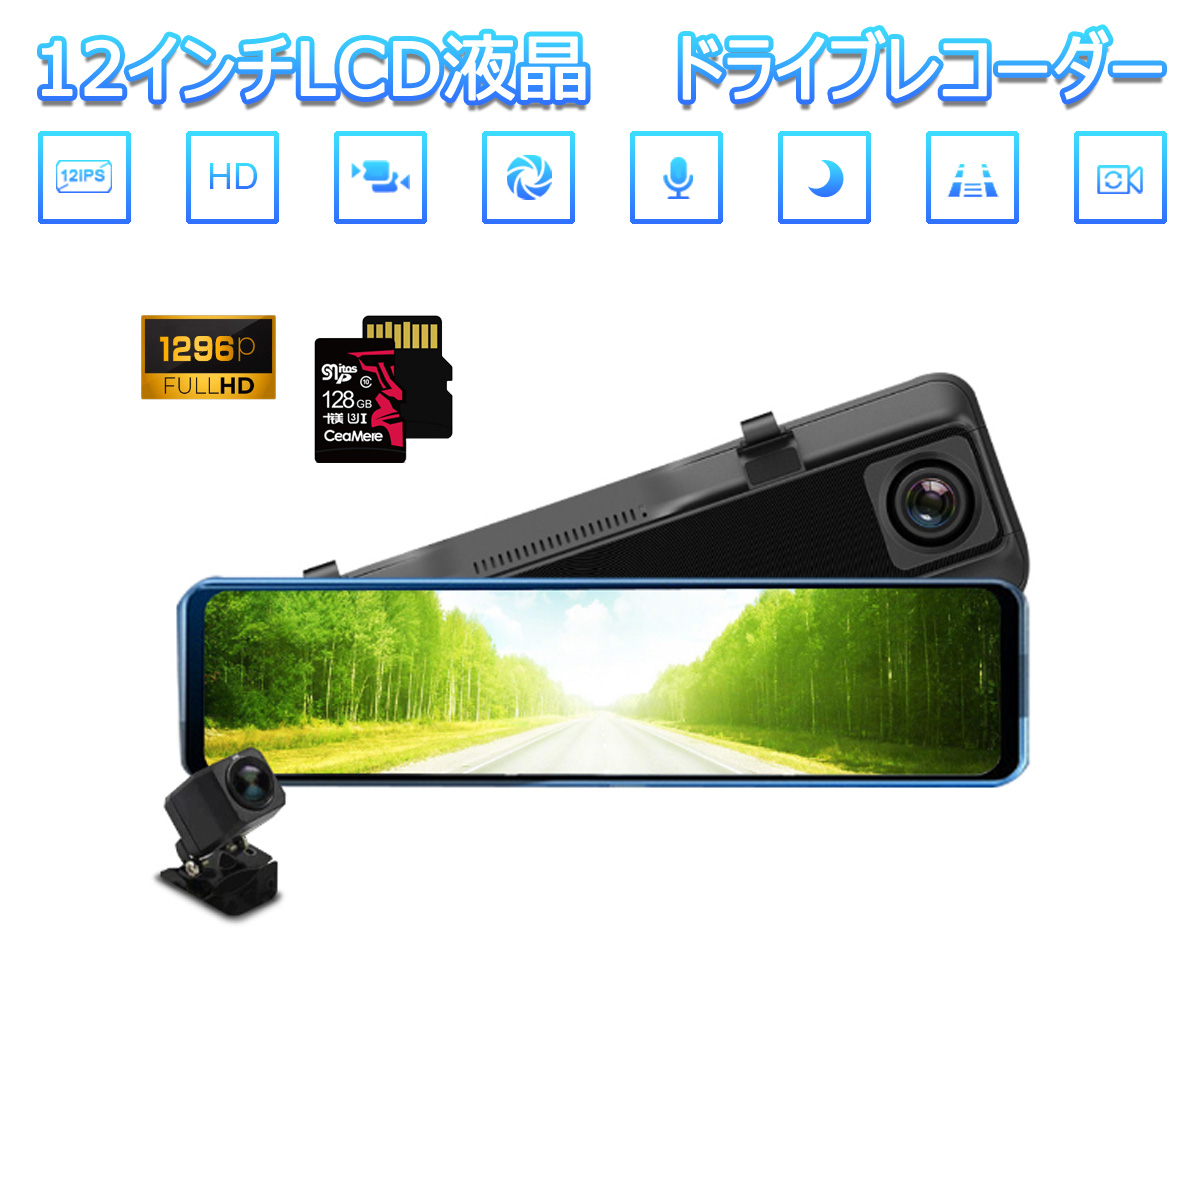 DAIHATSU用の非純正品 MAX 2020年モデル ドライブレコーダー 前後カメラ 12インチ ミラー型 SDカード128GB同梱モデル あおり運転対策 FHD 2K 1296p 200万画素 タッチパネル 170度広角 バックカメラ 6ヶ月保証